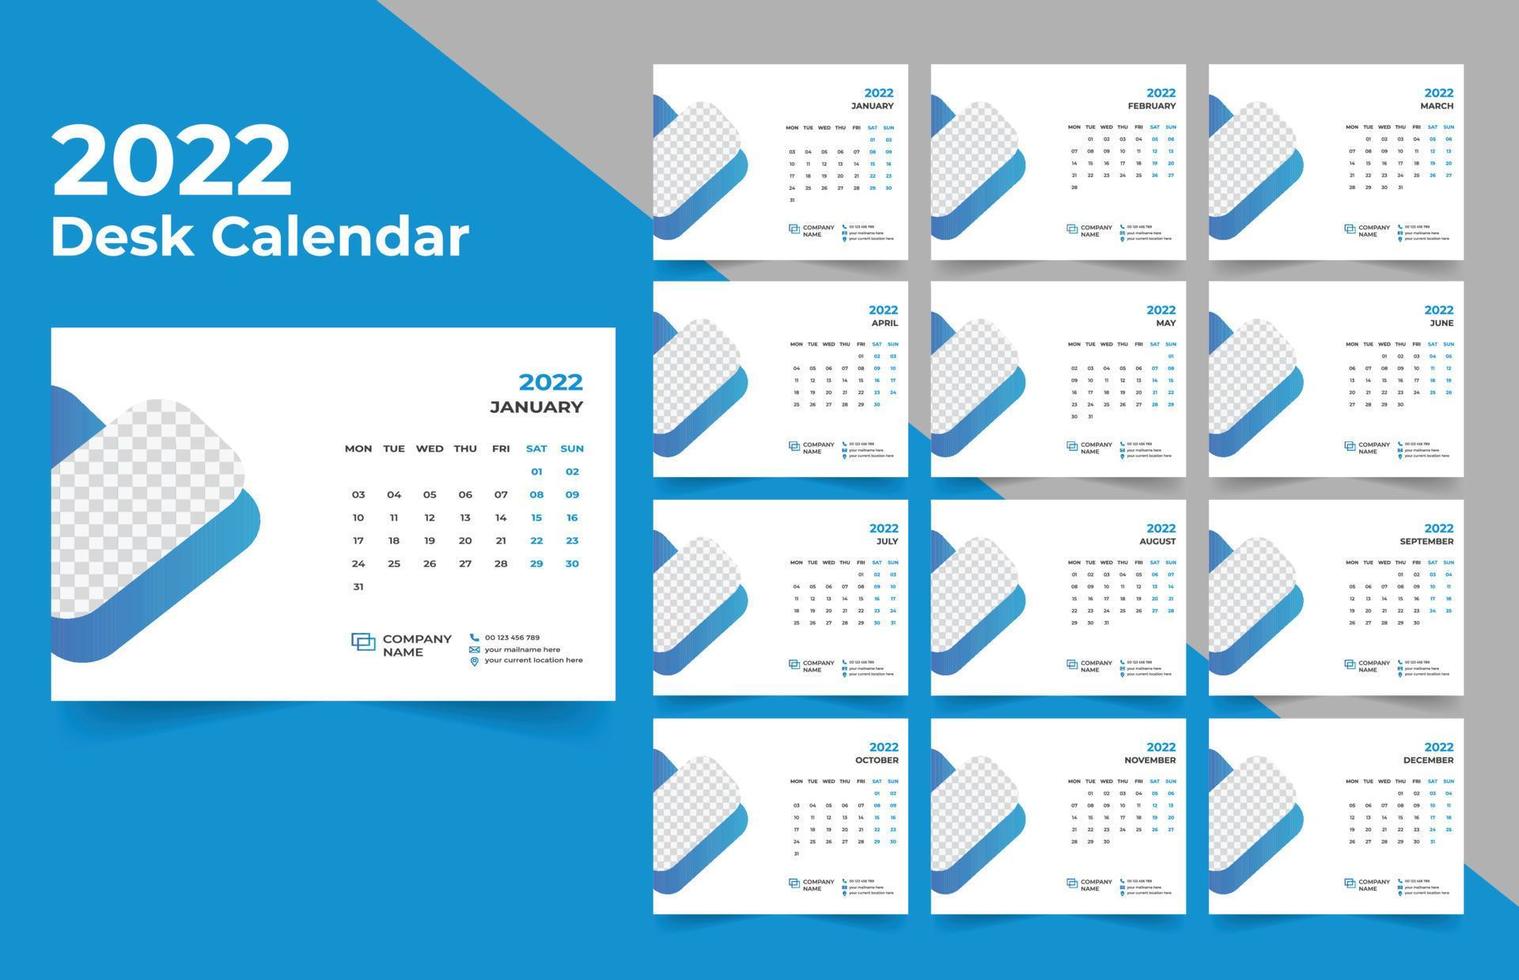 2022 Tischkalenderplaner .week beginnt am Montag. Vorlage für den Jahreskalender 2022 . vektor